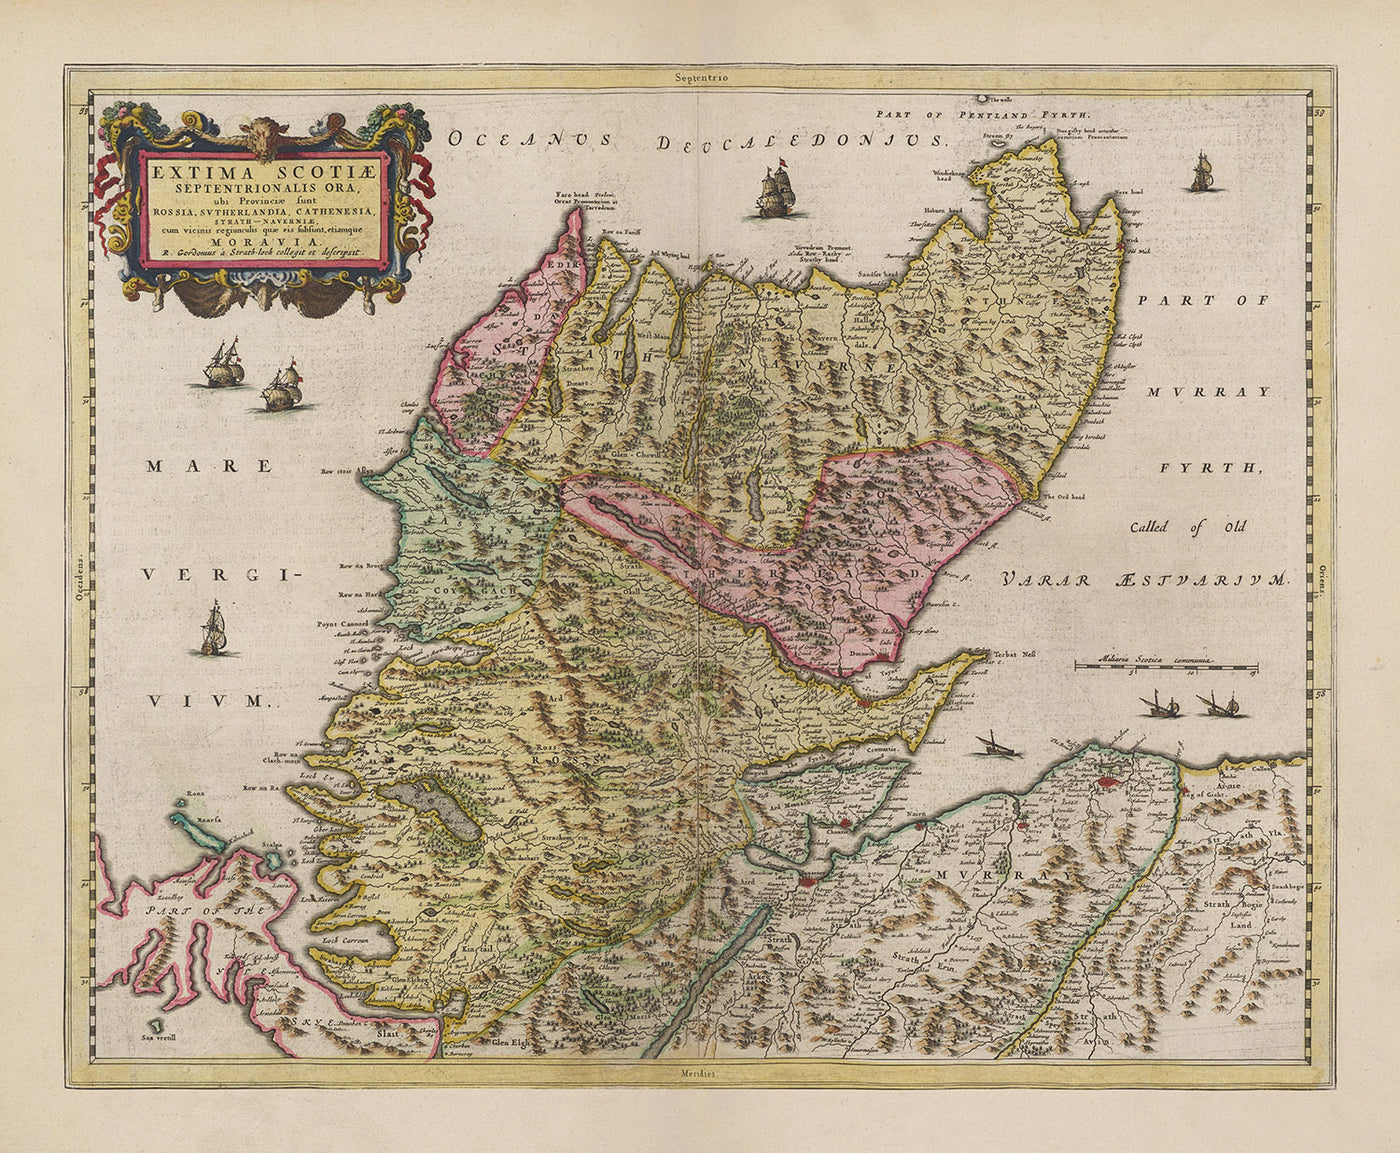 Alte Karte der schottischen Highlands, 1665 von Blaeu - Caithness, Sutherland, Ross, Nairn, Inverness, Moray